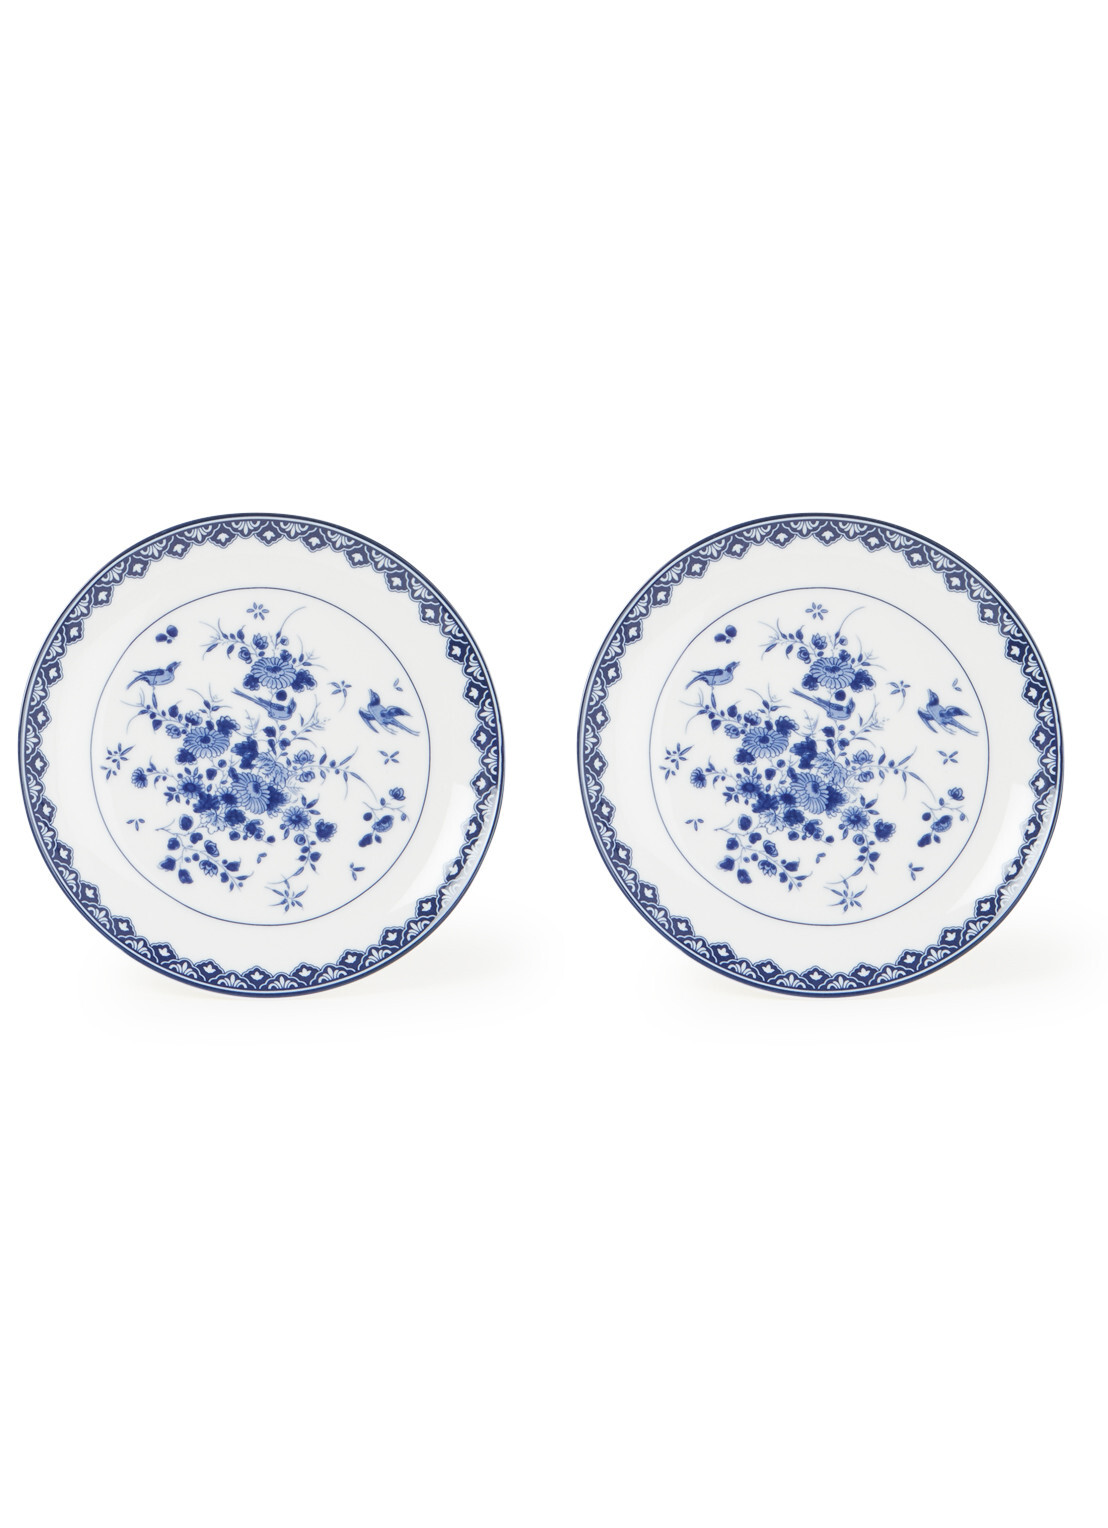 Klevering Borden - borden set - 2 stuks - Rijksmuseum - borden servies - bordjes - Delfts blauw - Delfts blauw servies - cadeau voor vrouw